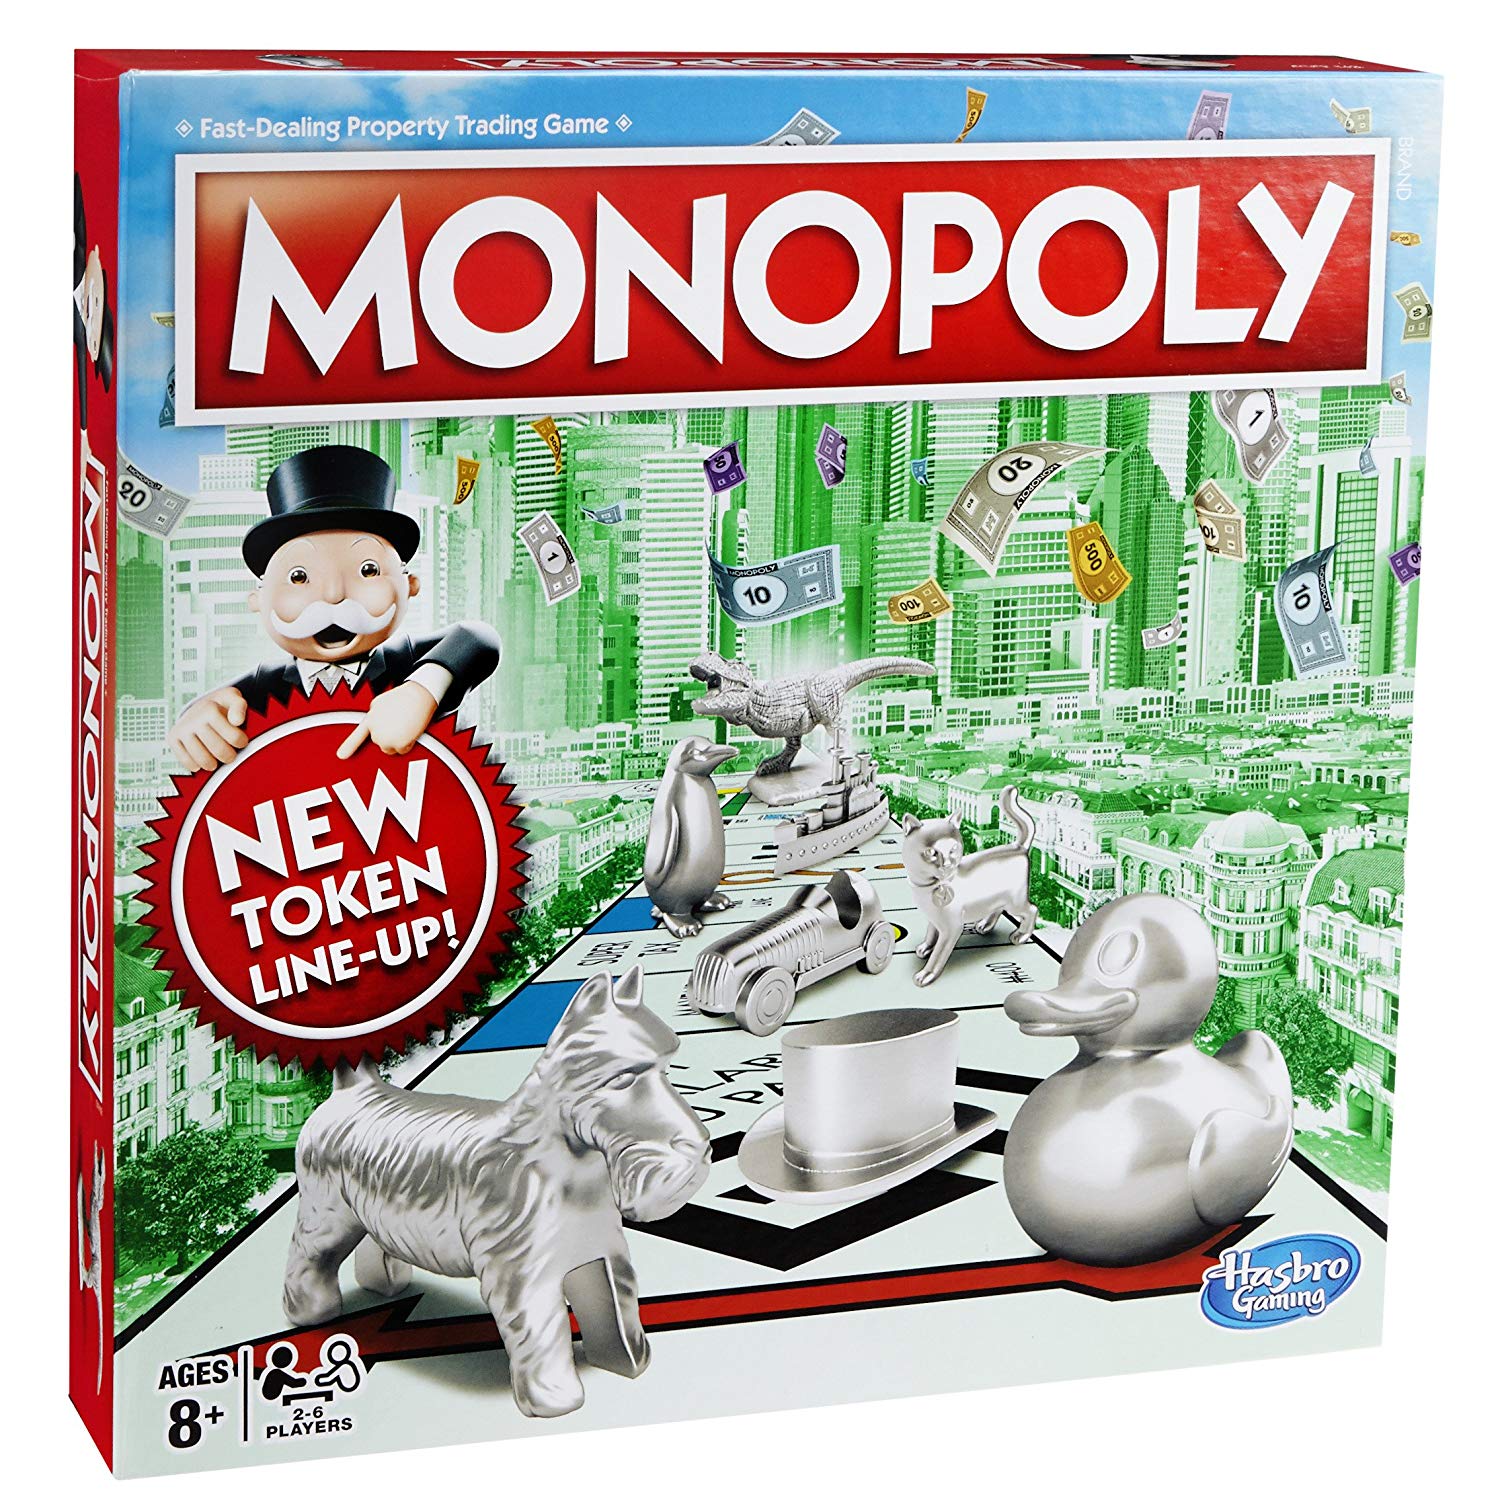 Monopoly играть. Классическая Монополия. Обновленная (c1009). Настольная игра "Монополия классическая" c1009 /Hasbro/. Настольная игра Hasbro Monopoly. Монополия классика Monopoly c1009.